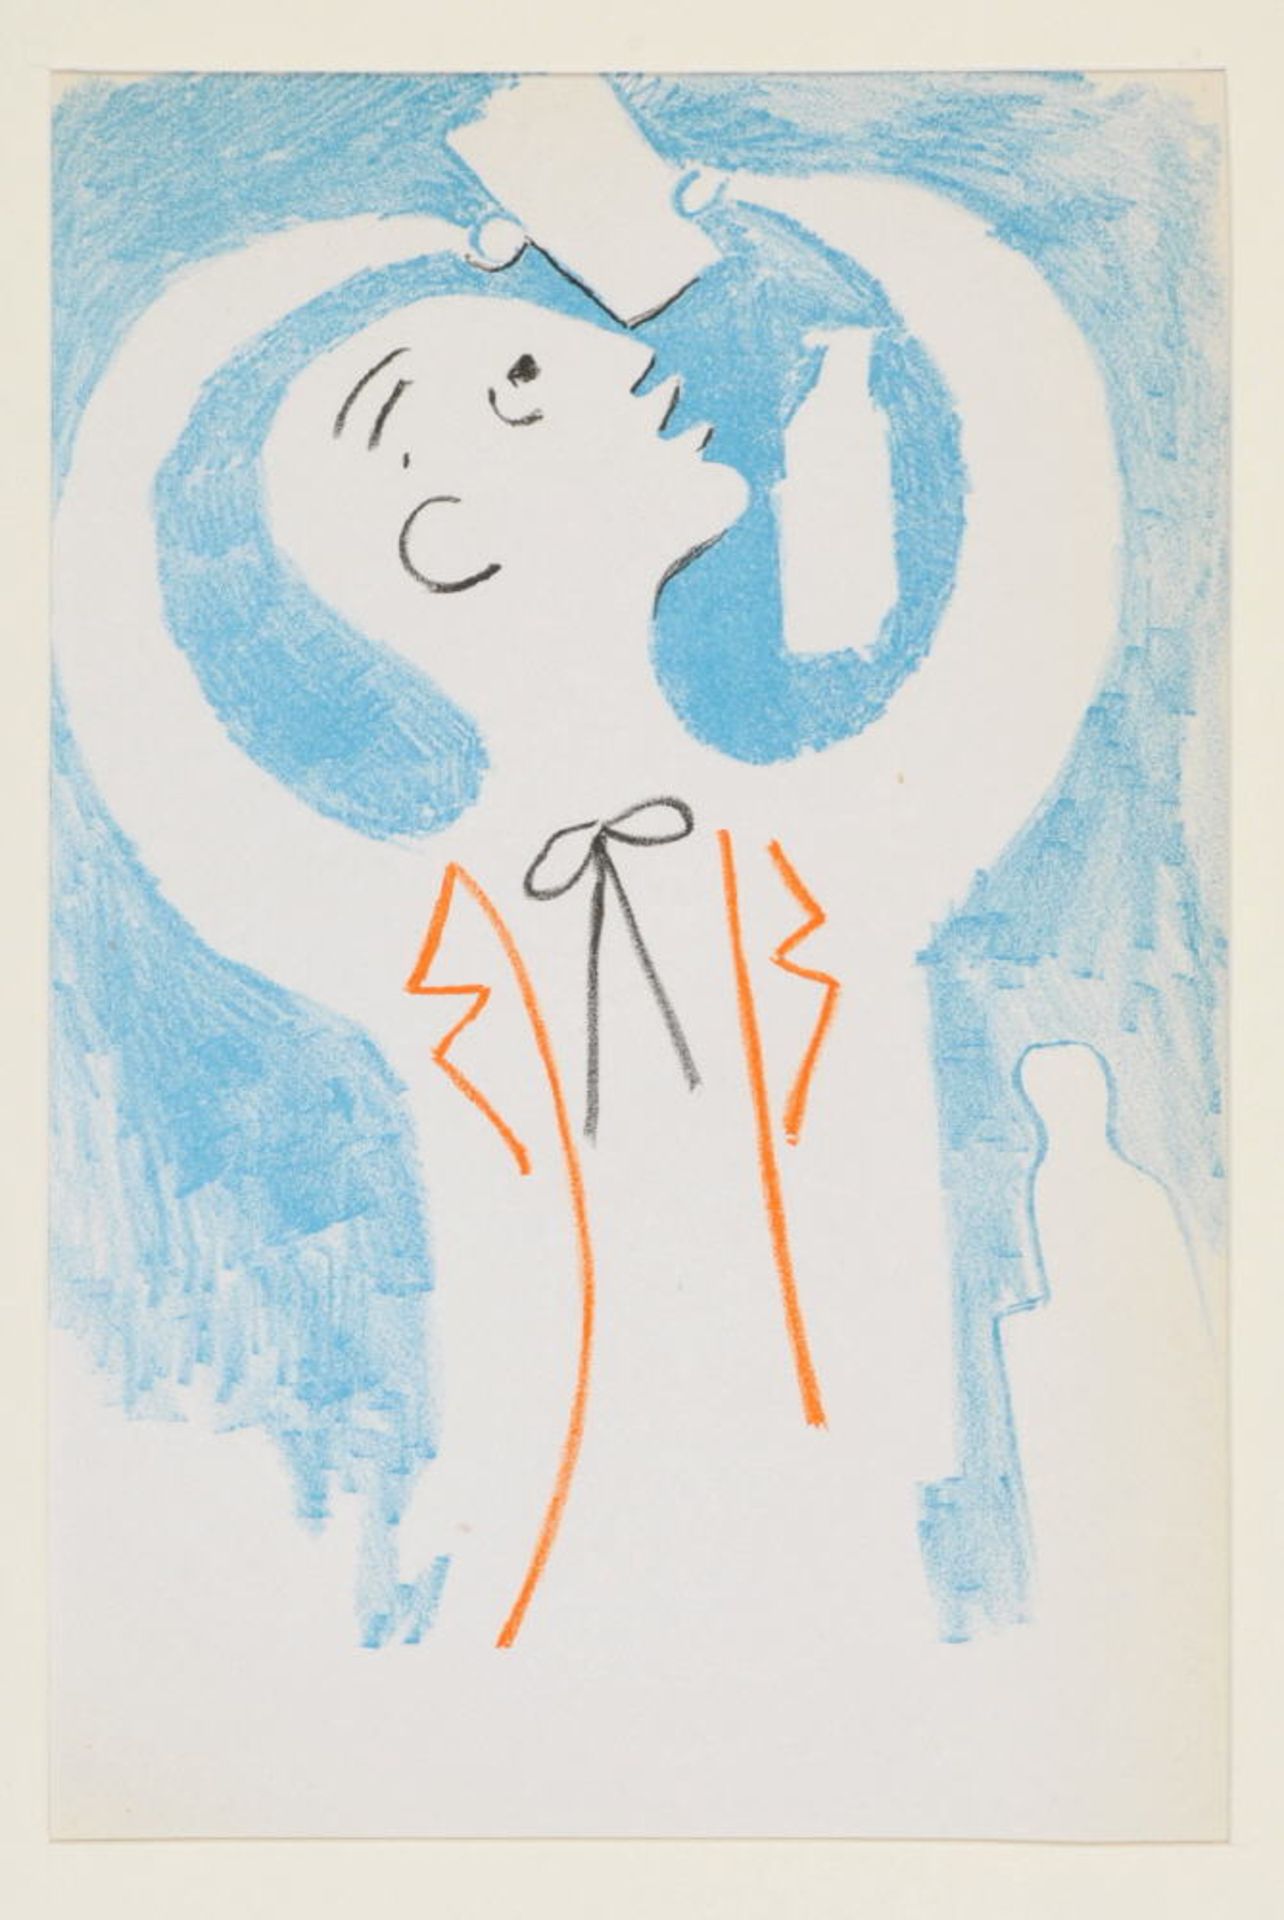 Cocteau, Jean , 1889 Maisons-Laffitte - 1963 Milly-la-ForêtFarblithographie, 22 x 14,5 cm, " Le